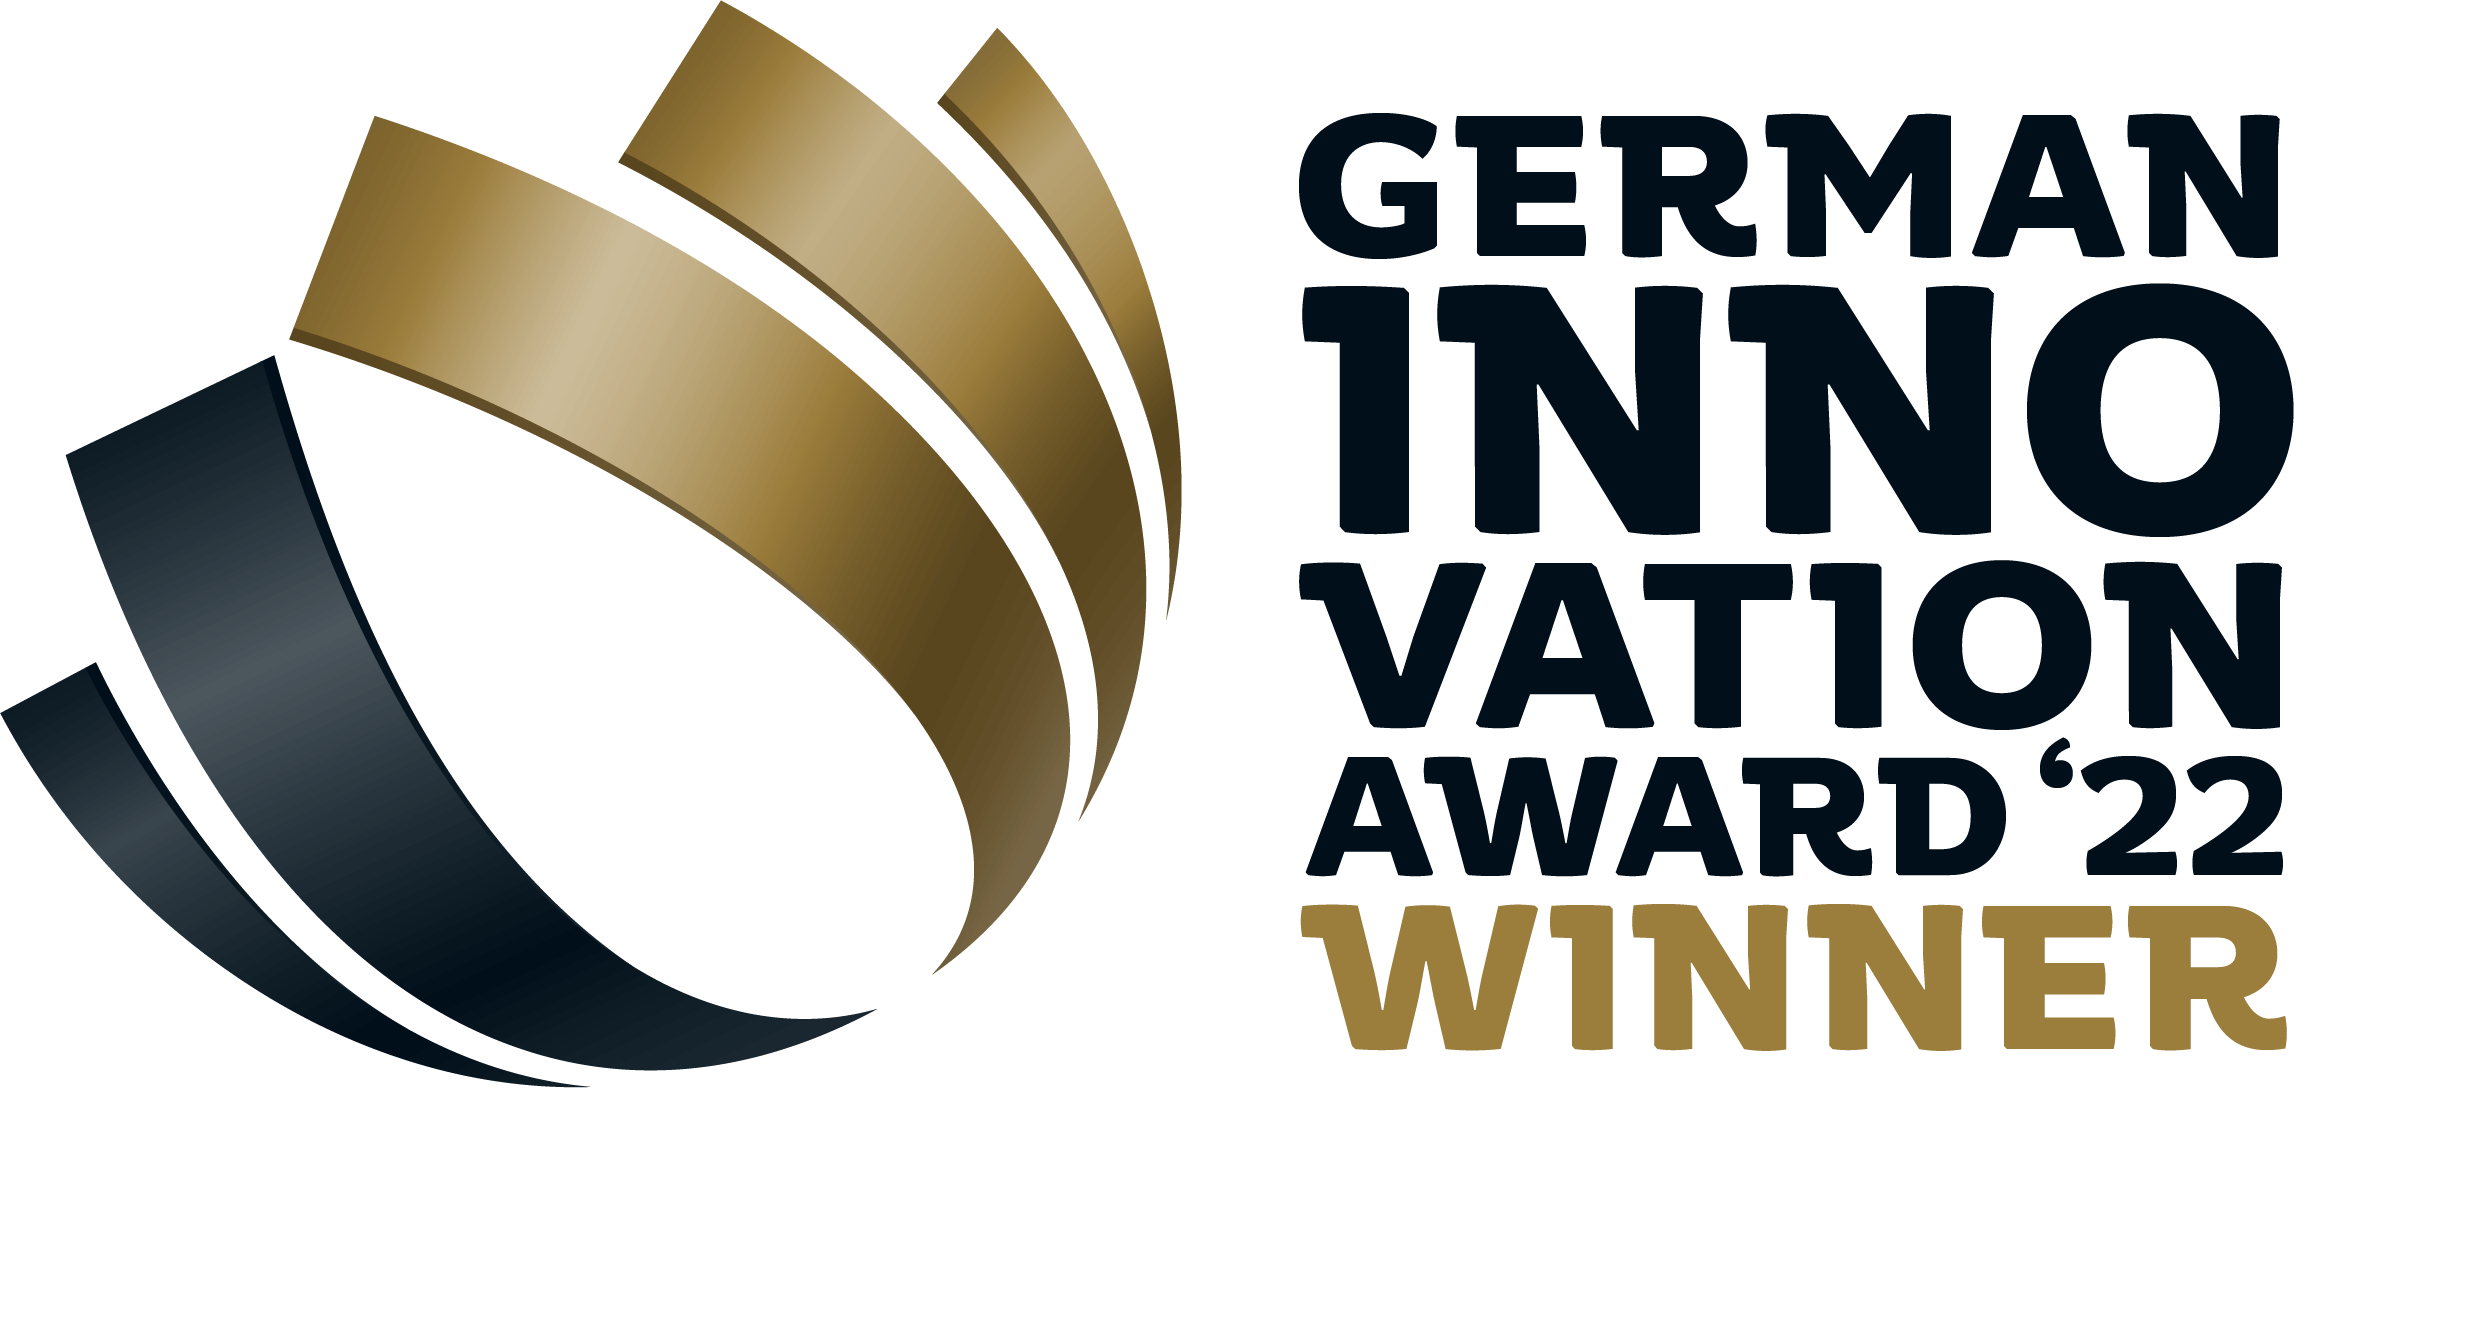 German Innovation Award 2022